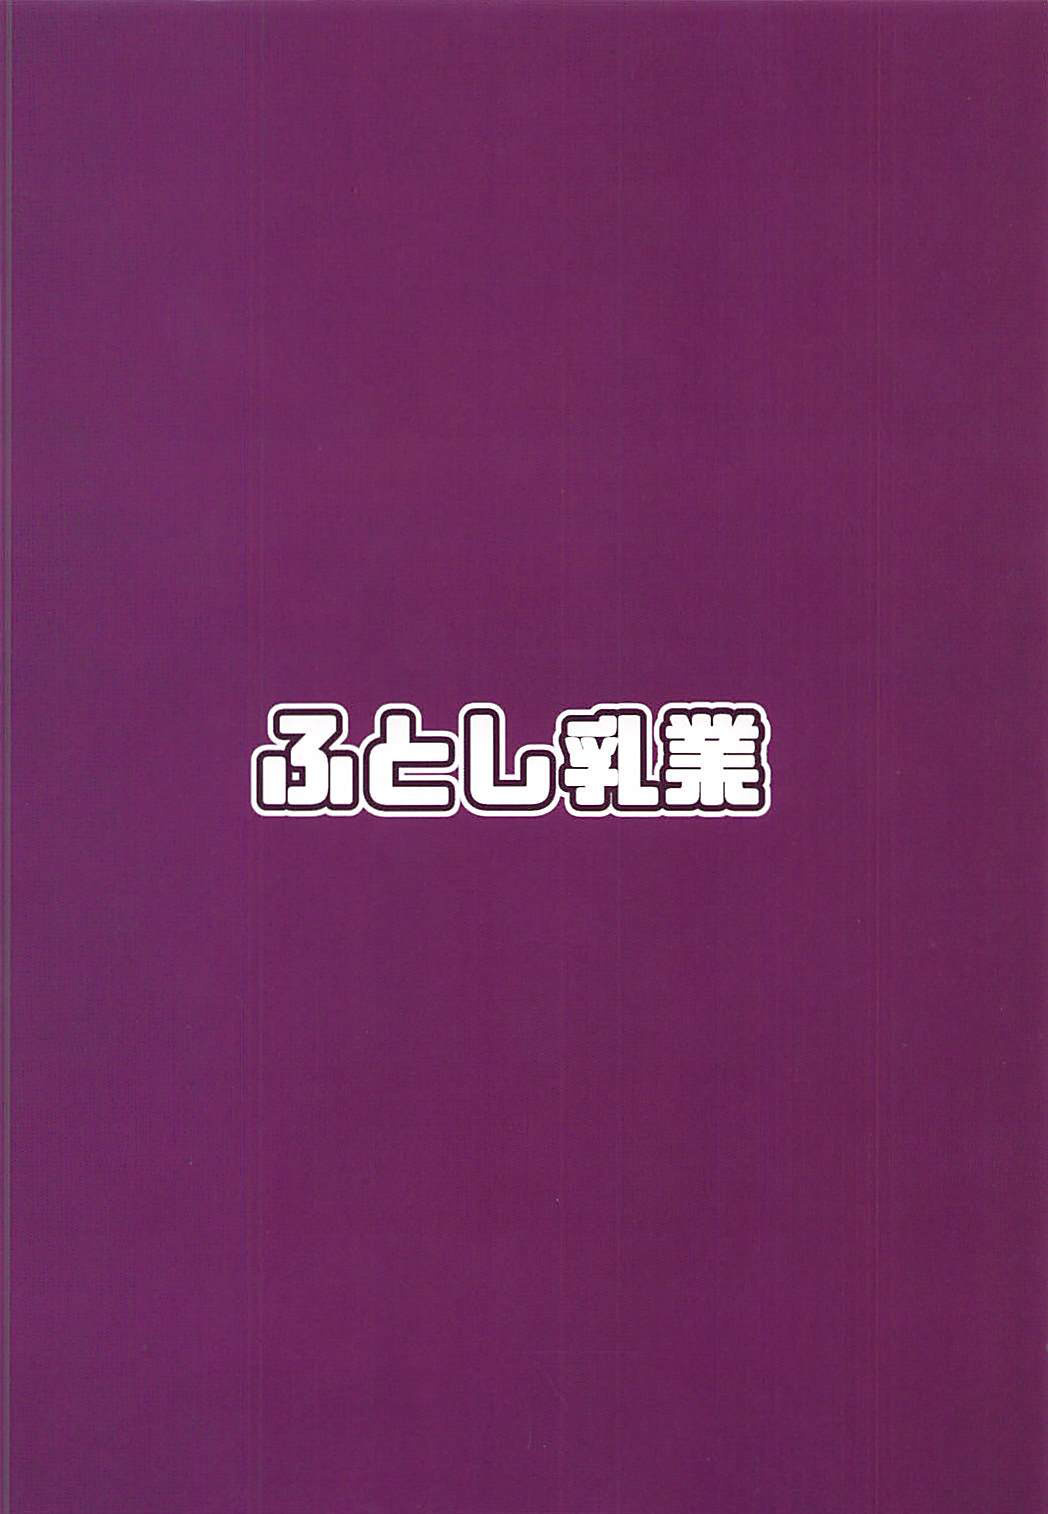 (COMIC1☆13) [Hutoshi Nyuugyou (Hutoshi)] Chaldea Kyounyuu Seikatsu vol:1.5 (Fate/Grand Order) [Chinese] [不可视汉化] (COMIC1☆13) [ふとし乳業 (ふとし)] カルデア挟乳生活 vol:1.5 (Fate/Grand Order) [中国翻訳]